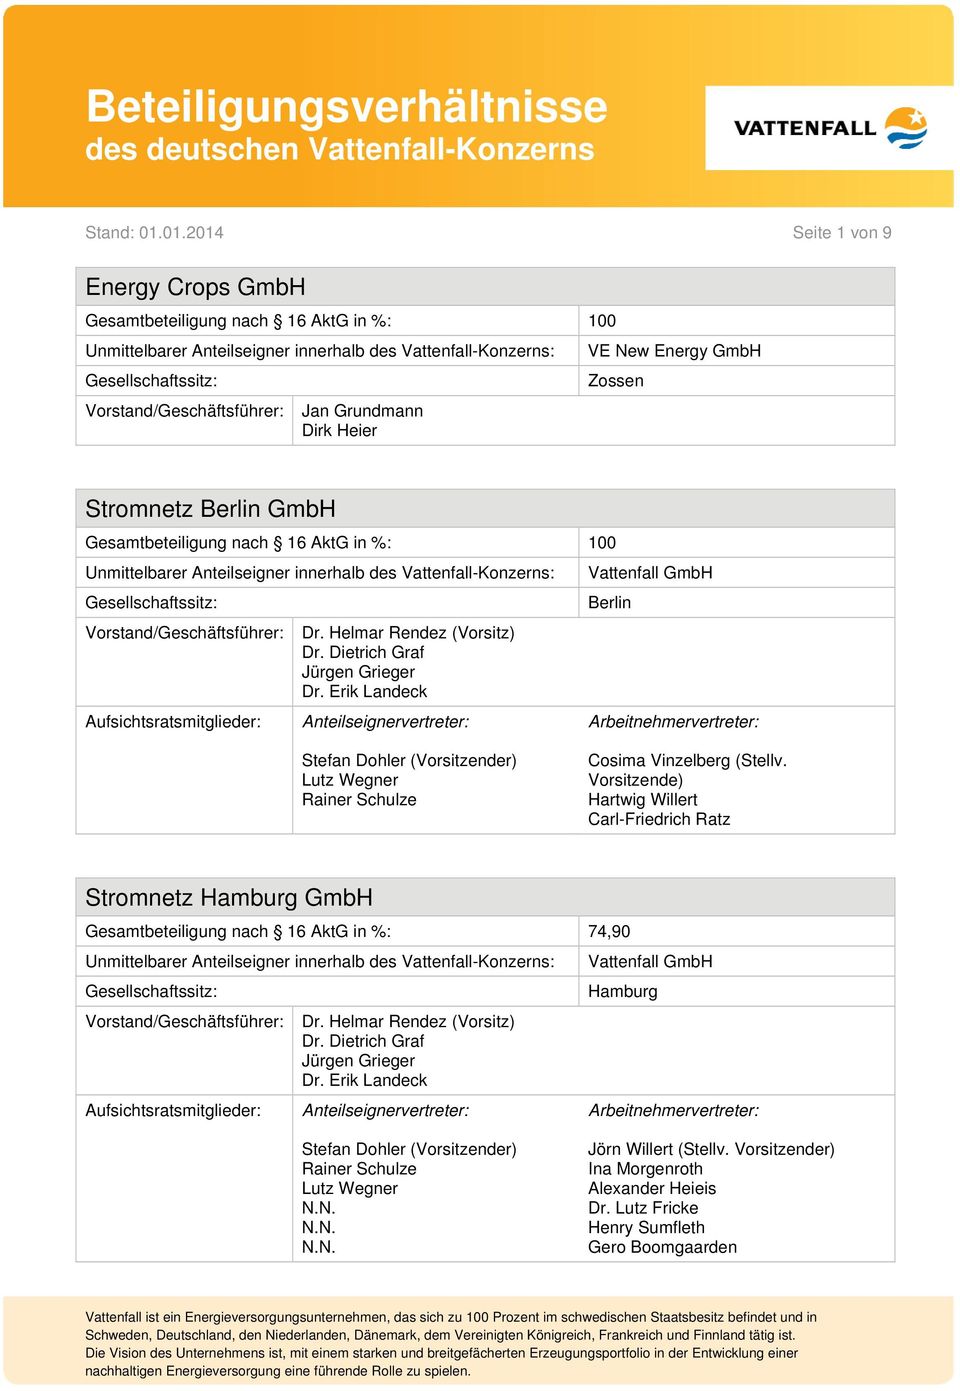 Vorsitzende) Hartwig Willert Carl-Friedrich Ratz Stromnetz GmbH Gesamtbeteiligung nach 16 AktG in %: 74,90 Dr. Helmar Rendez (Vorsitz) Dr.